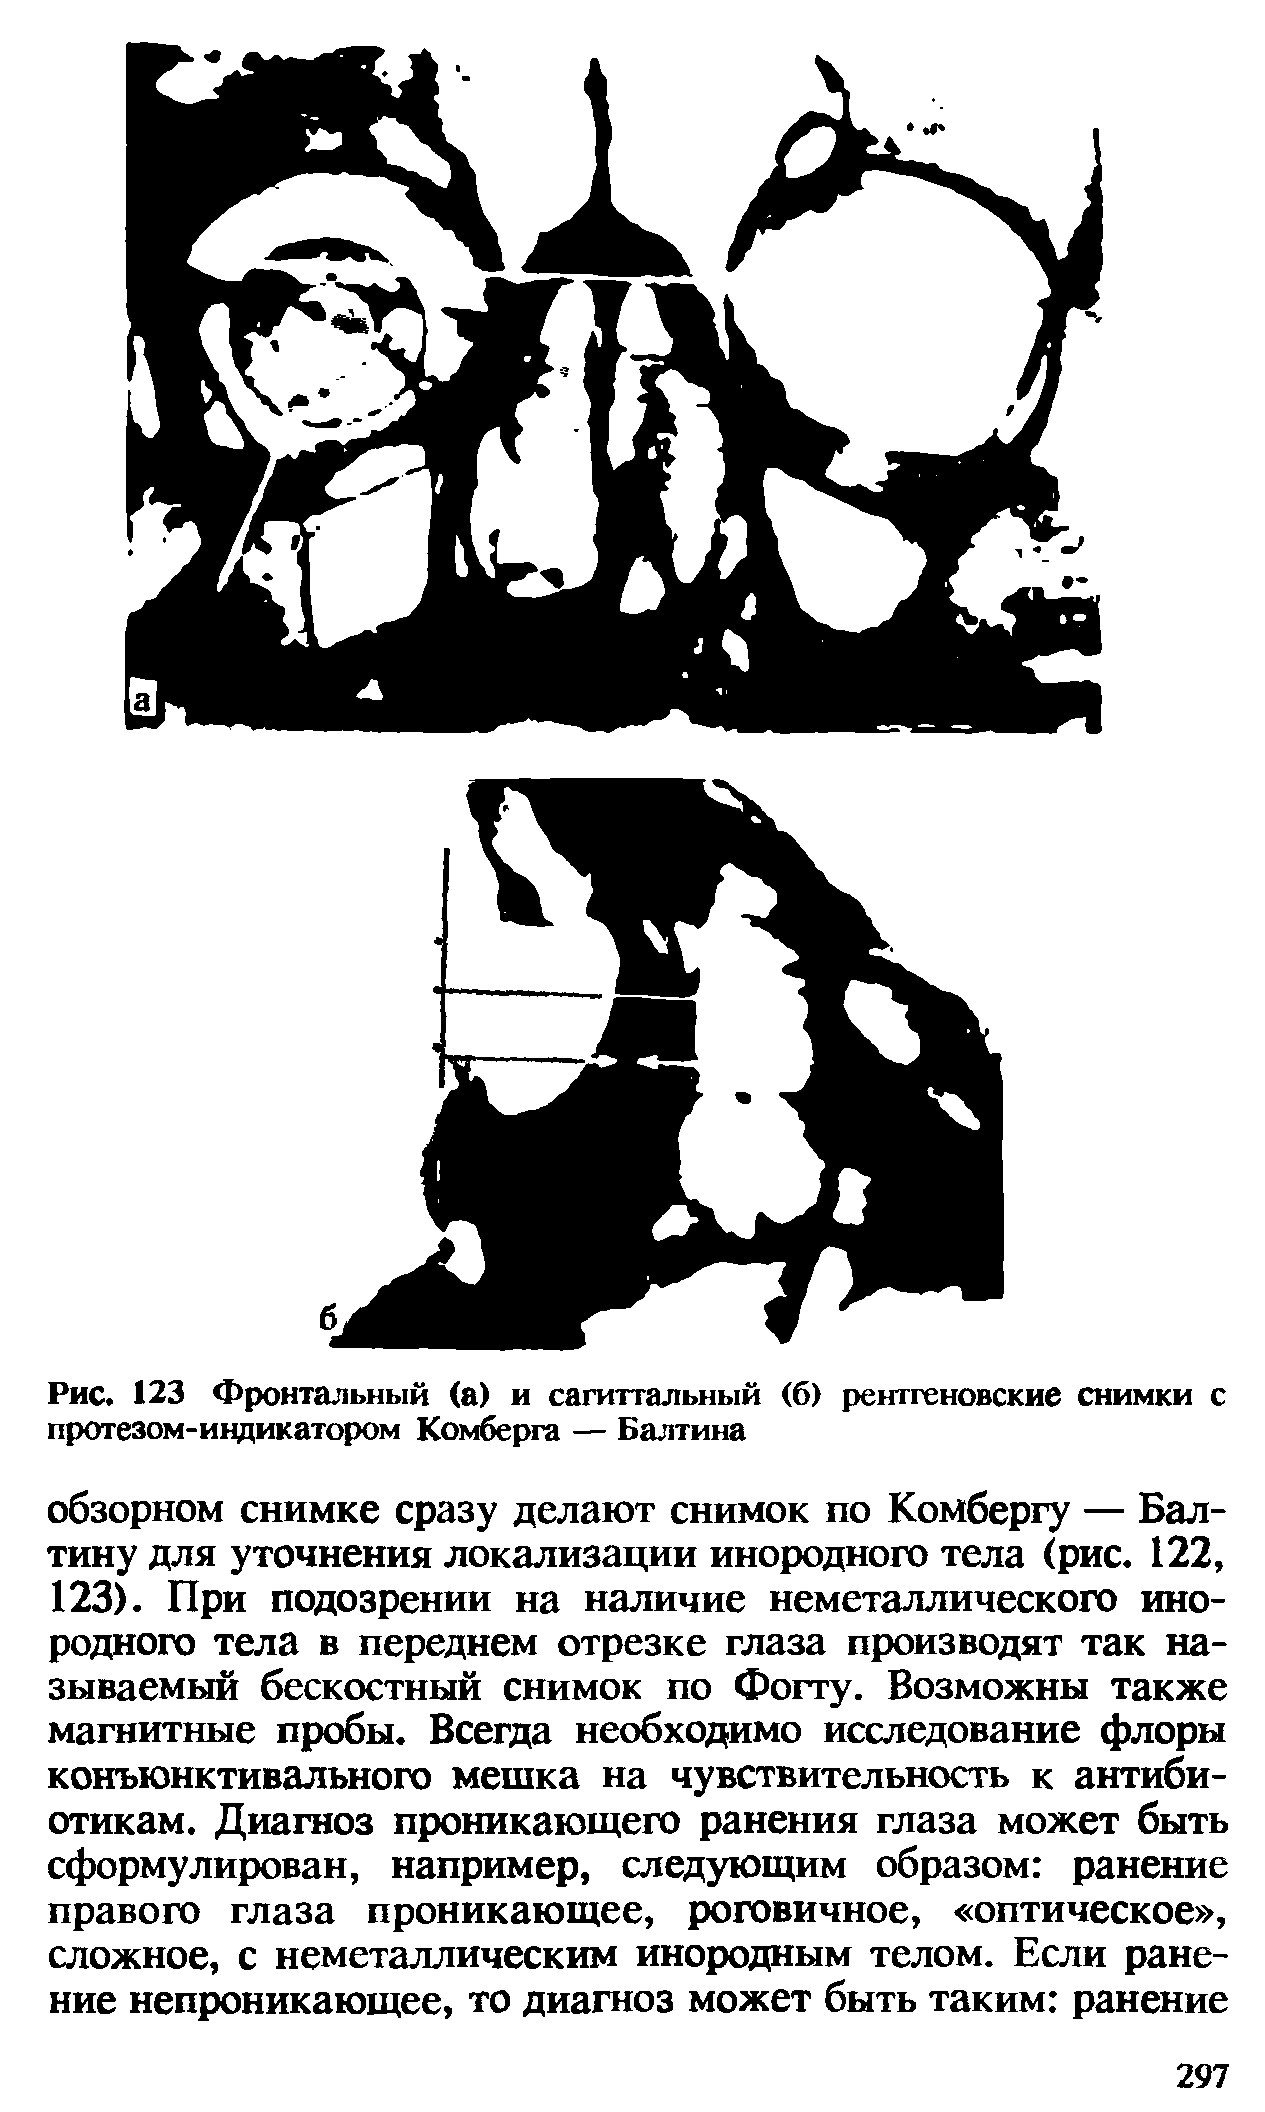 Рис. 123 Фронтальный (а) и сагиттальный (6) рентгеновские снимки с протезом-индикатором Комберга — Балтина...